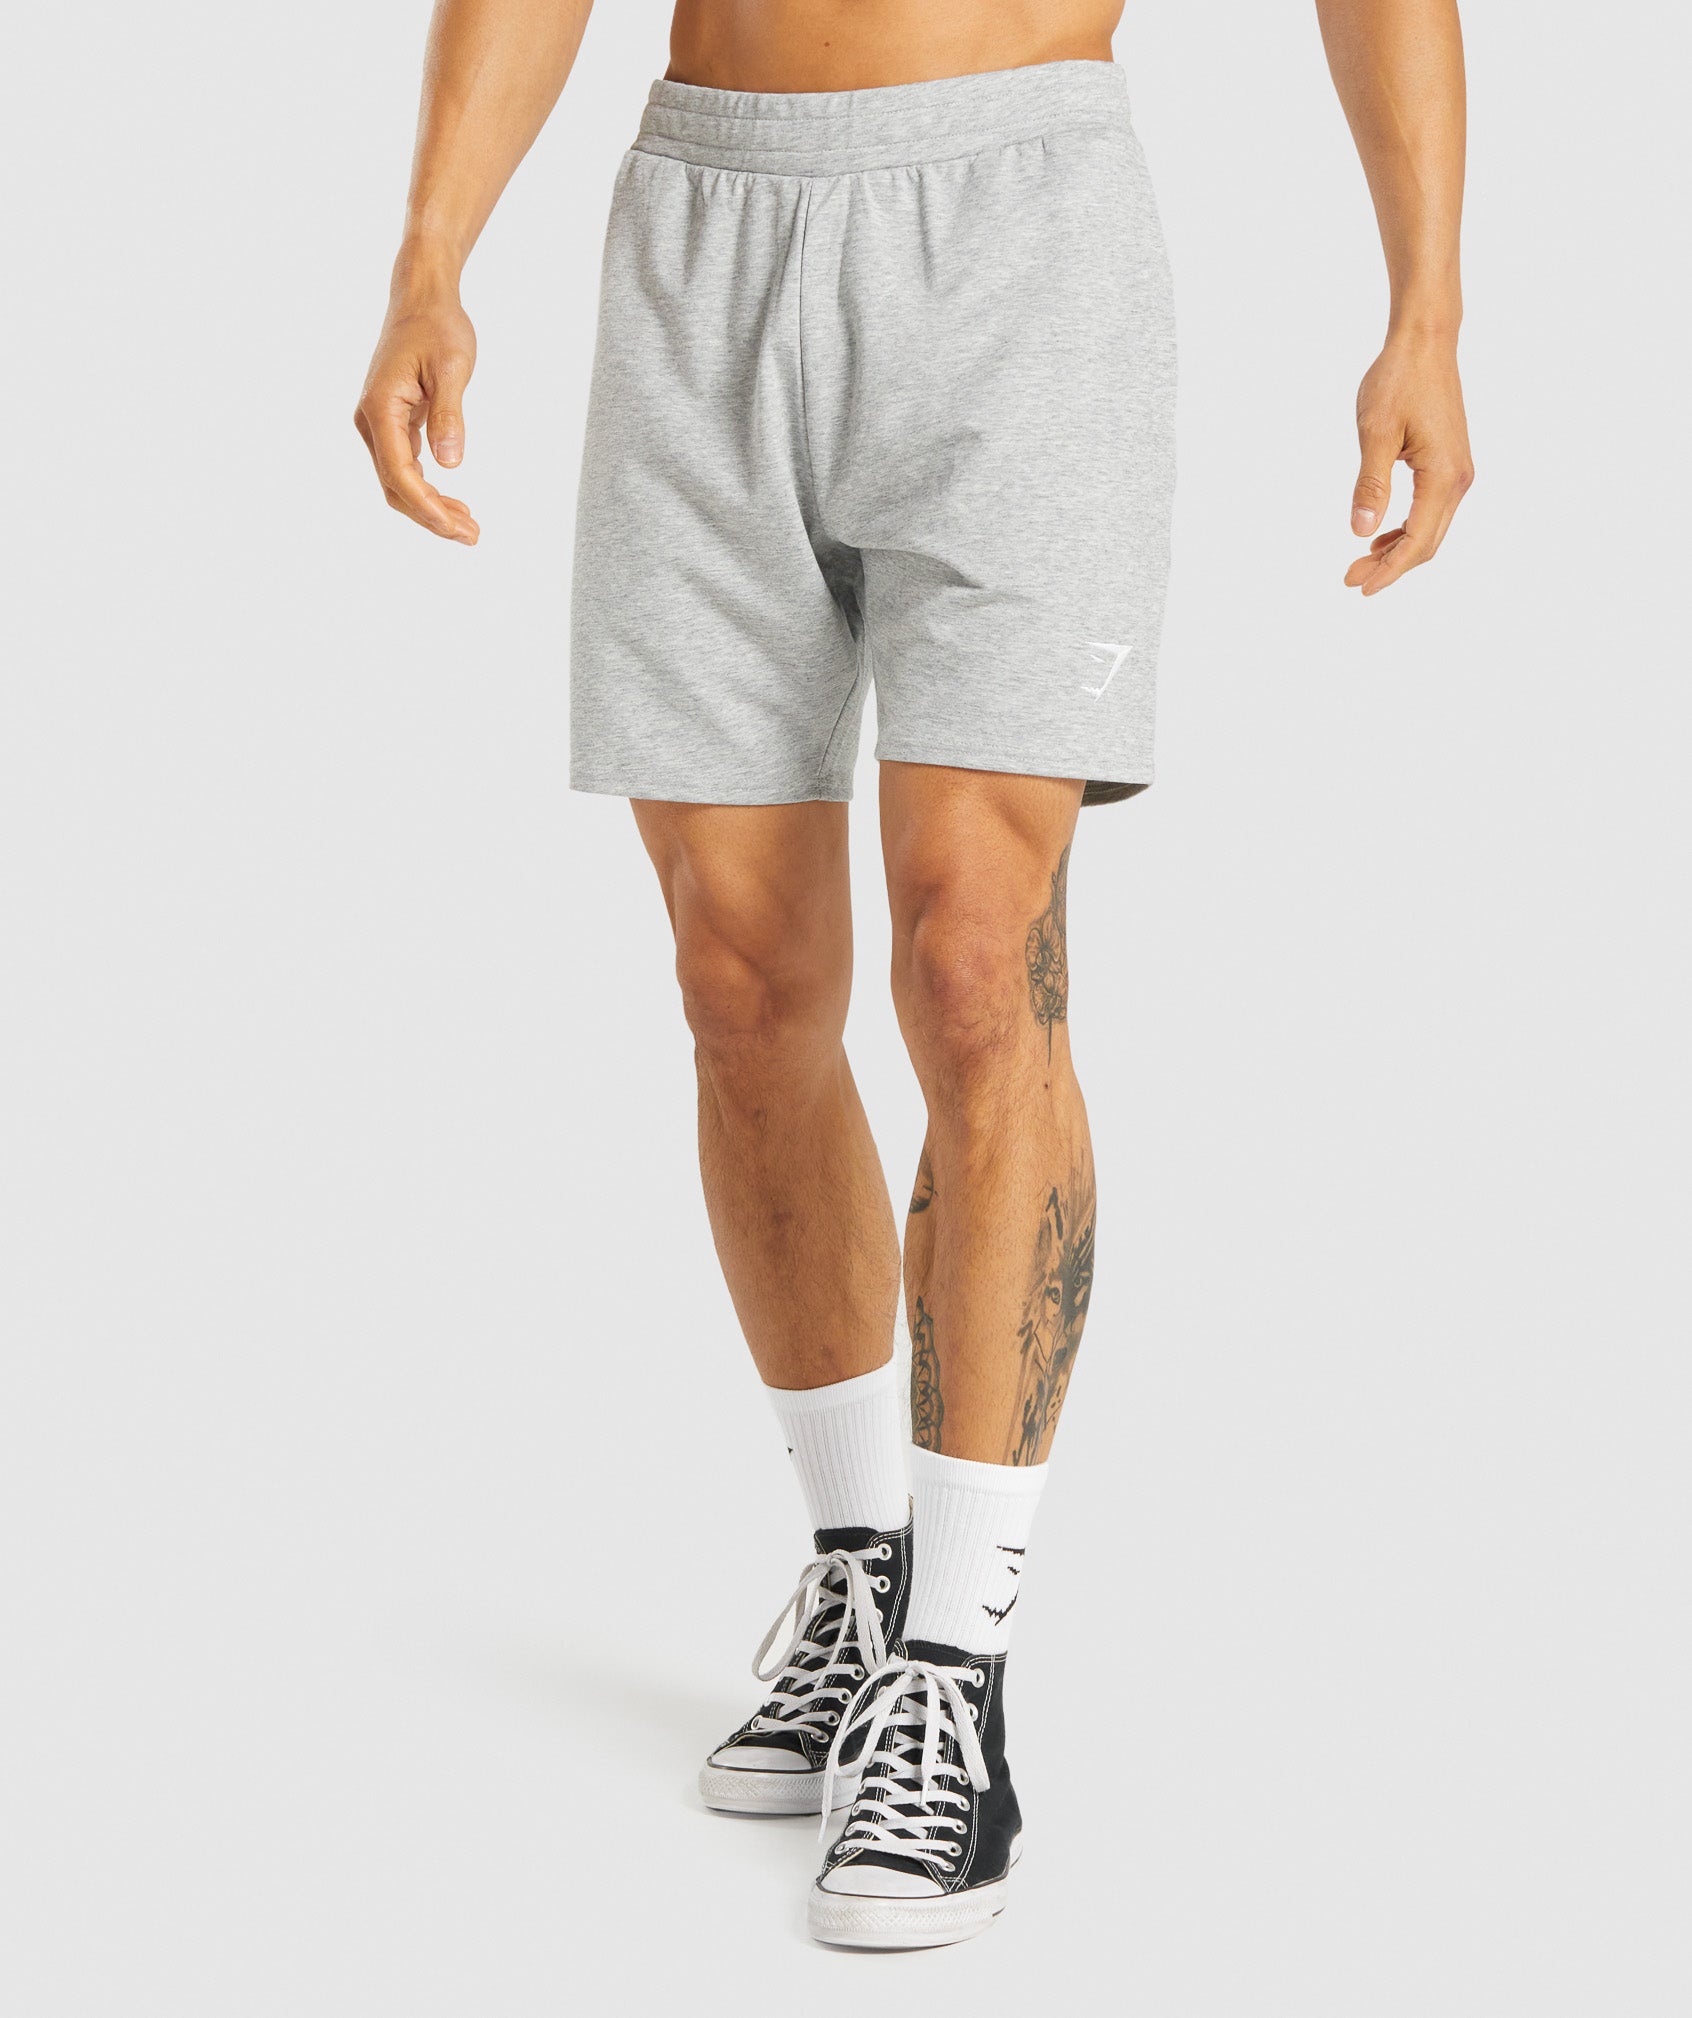 Gymshark Critical Shorts - 7” - Save 56%